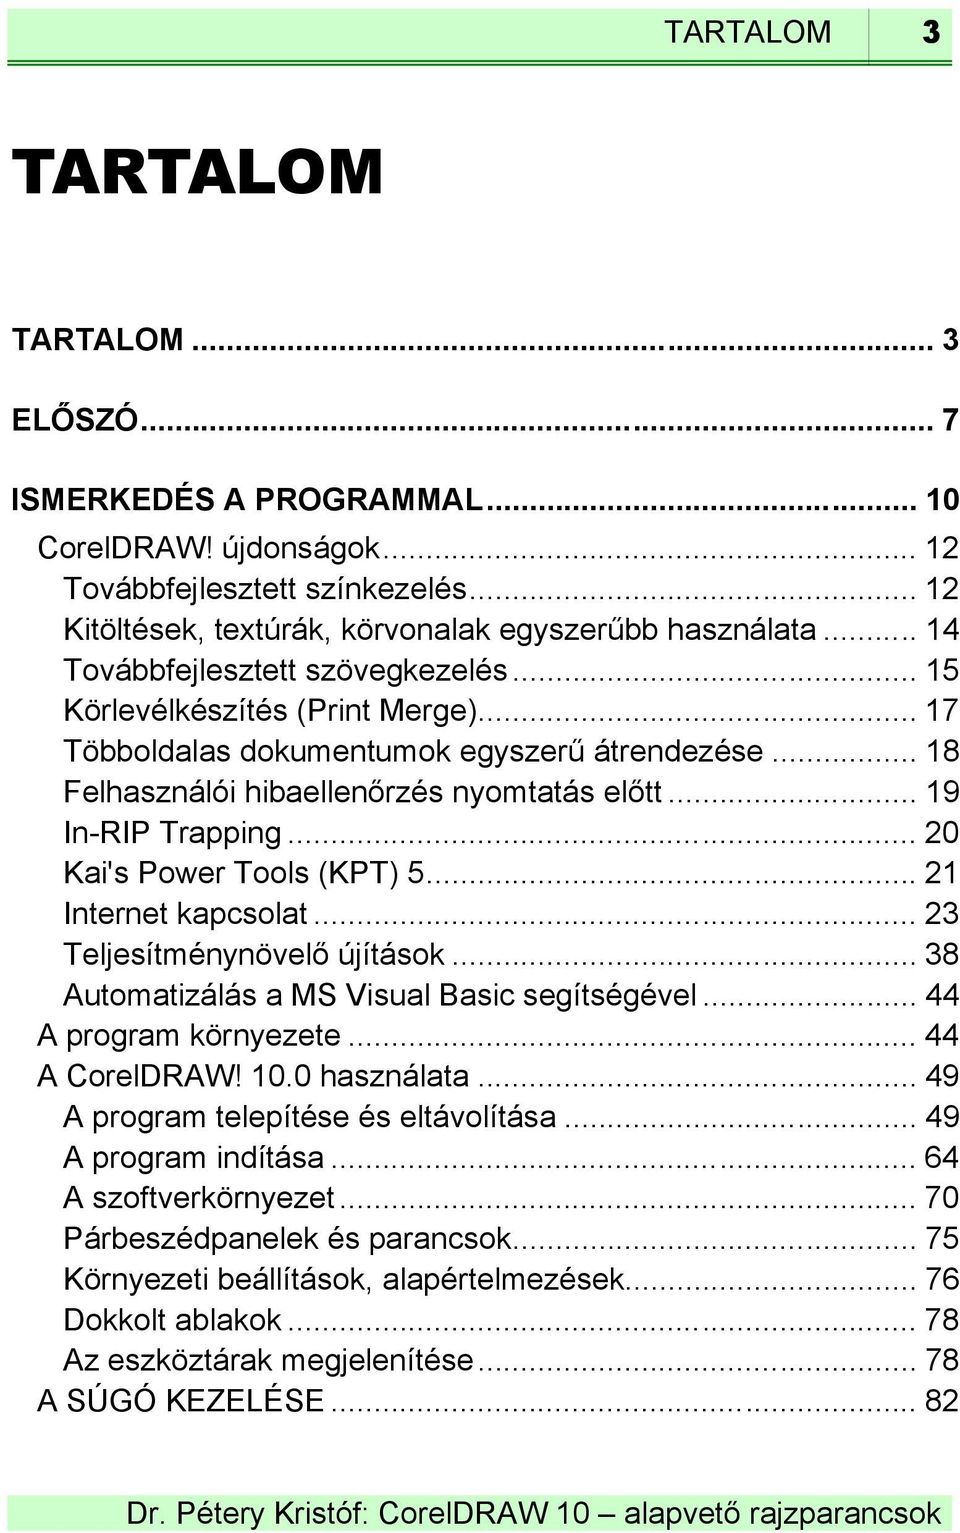 .. 20 Kai's Power Tools (KPT) 5... 21 Internet kapcsolat... 23 Teljesítménynövelő újítások... 38 Automatizálás a MS Visual Basic segítségével... 44 A program környezete... 44 A CorelDRAW! 10.